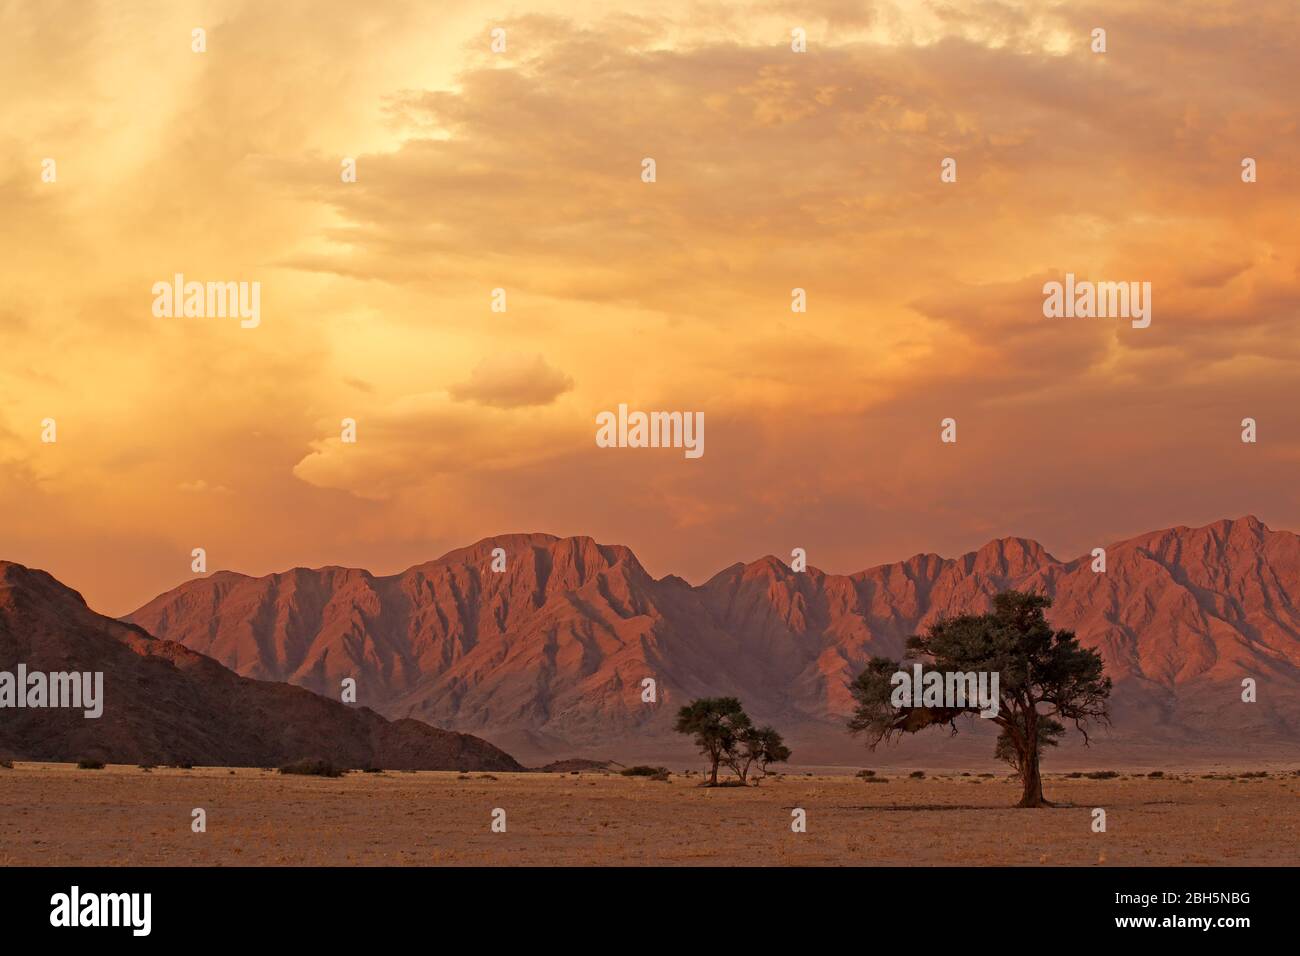 Namib désert paysage au coucher du soleil avec des montagnes accidentées et des nuages dramatiques, Namibie Banque D'Images